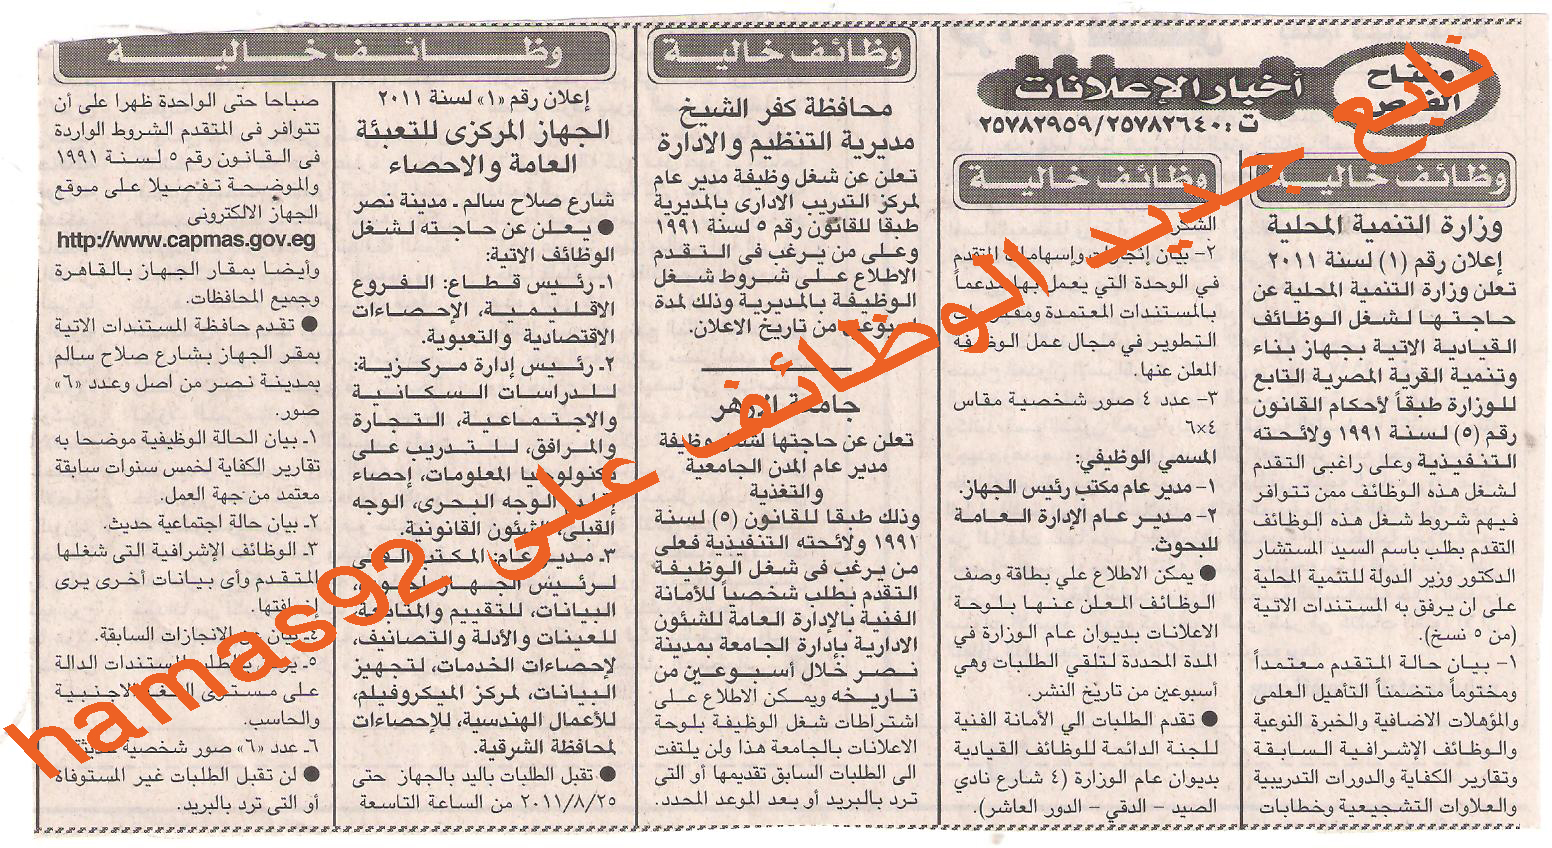 وظائف خالية من جريدة الاخبار الثلاثاء 16 اغسطس 2011 Picture+001